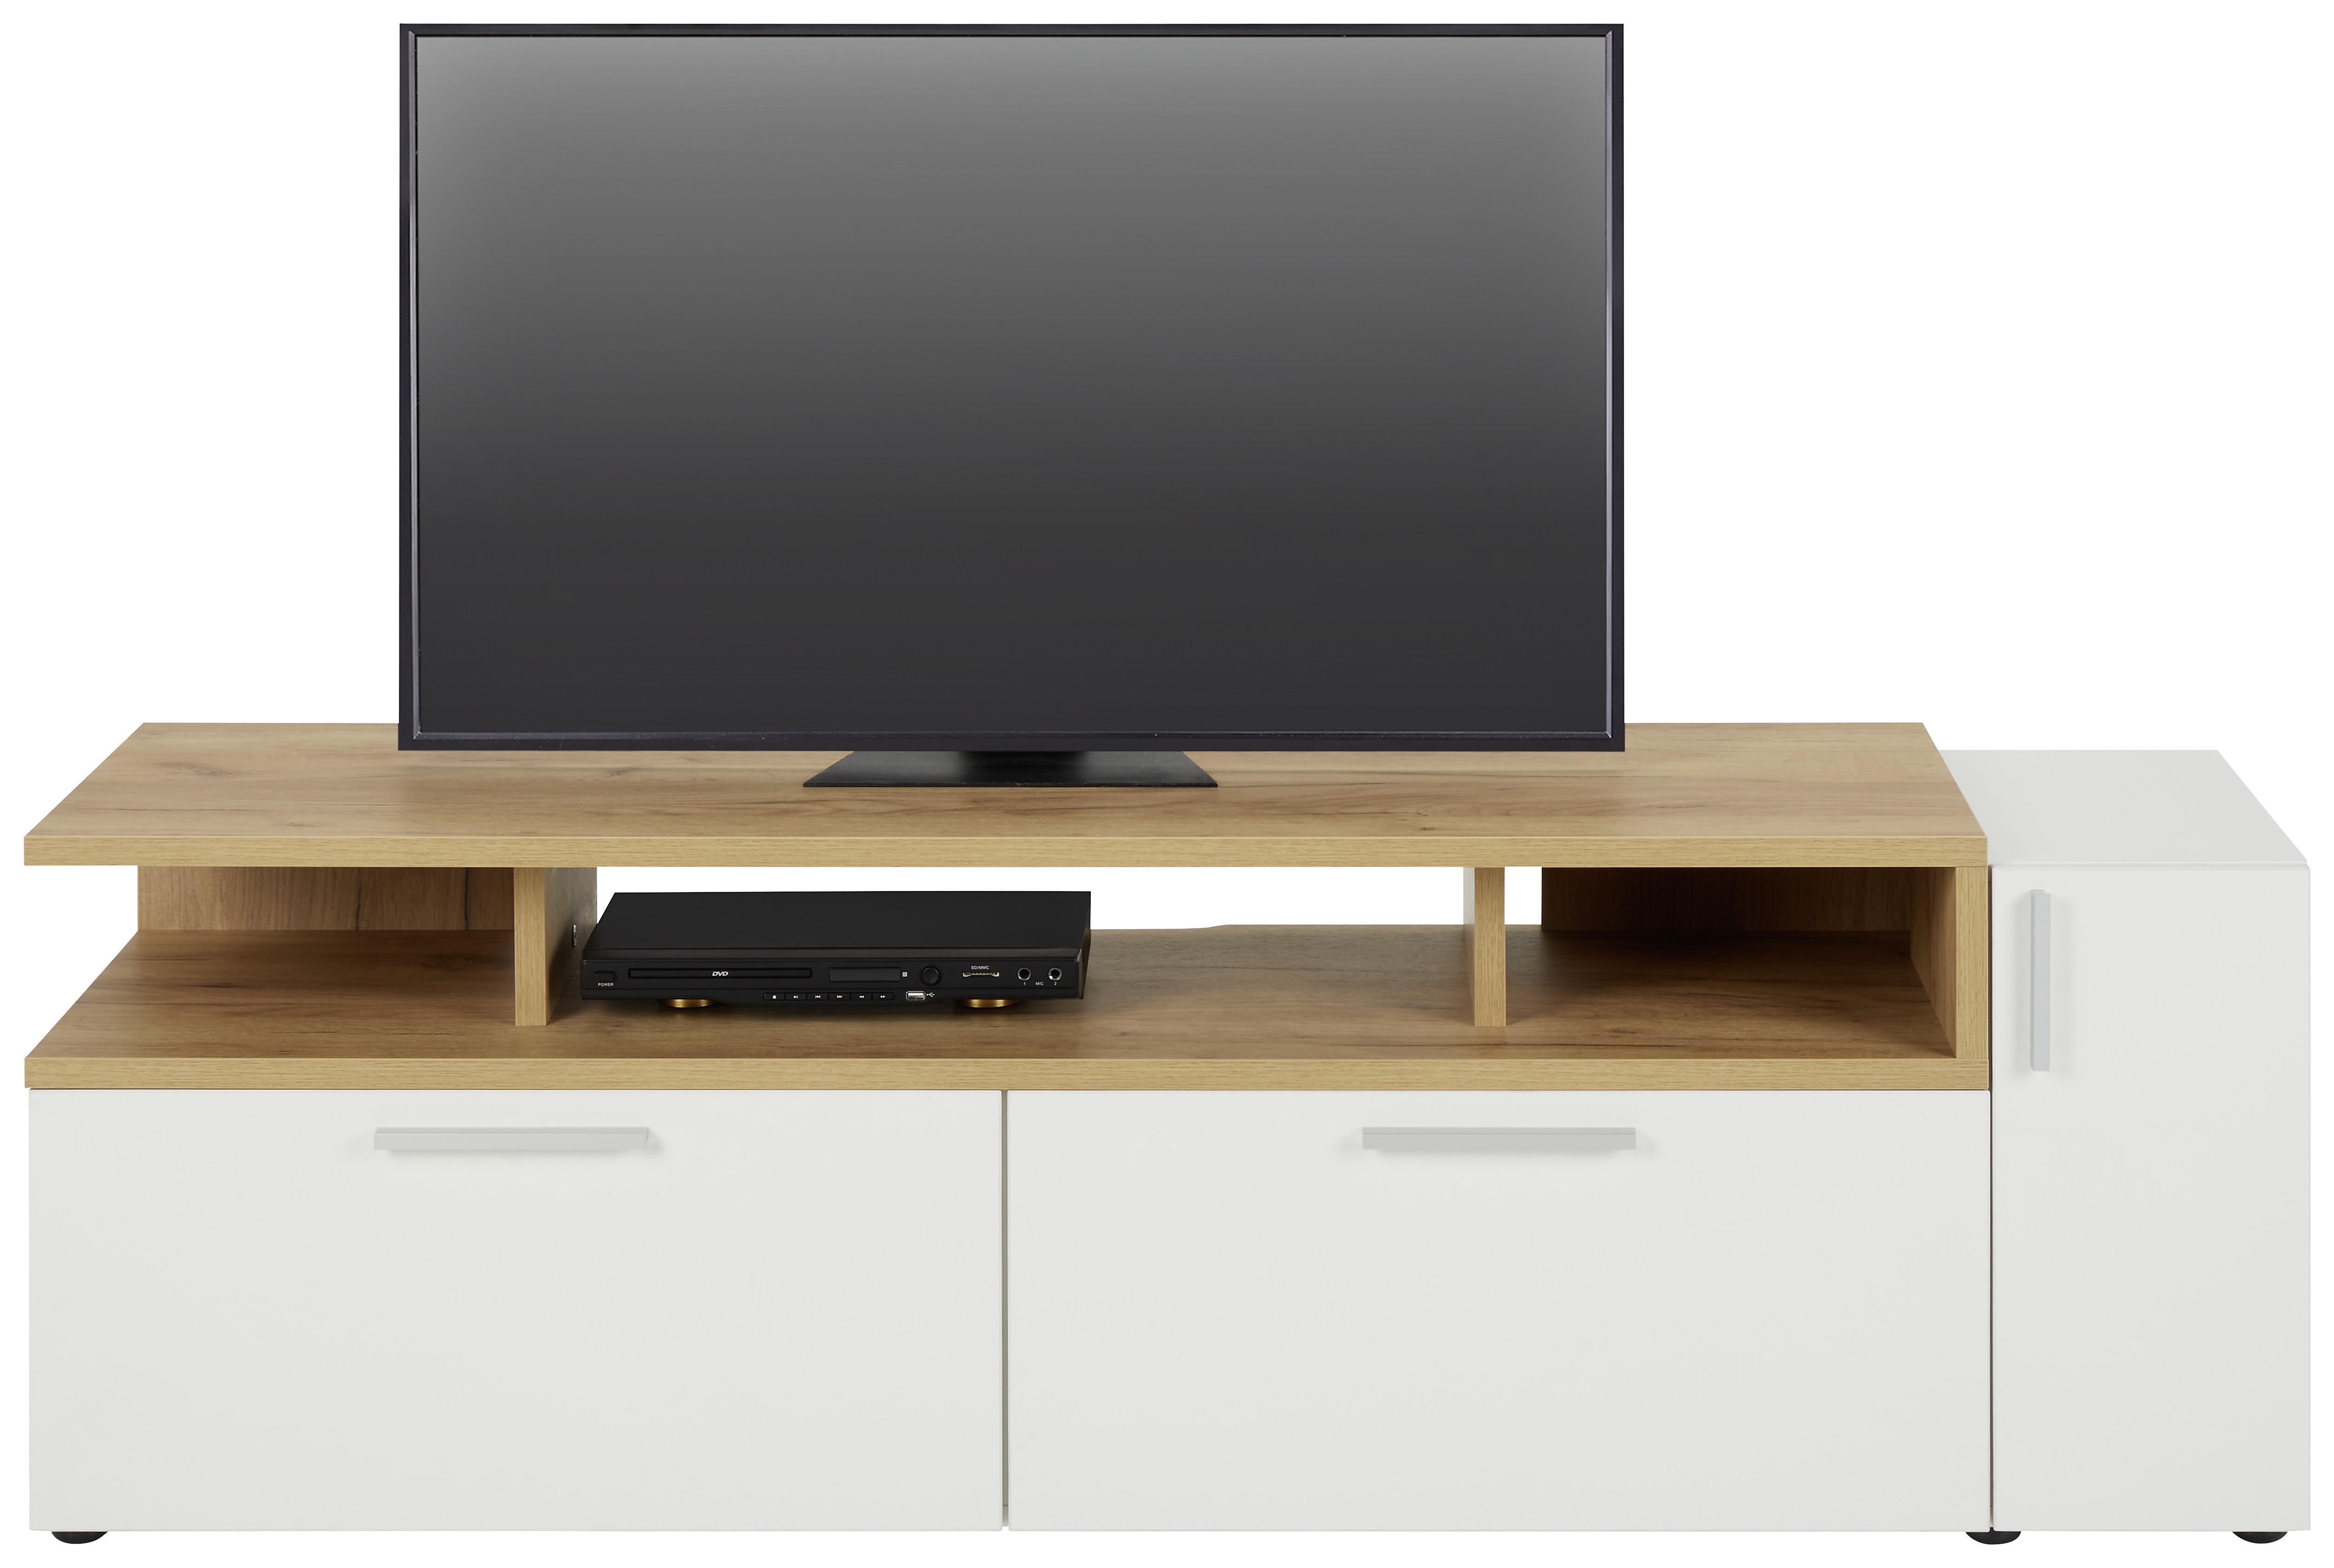 TV-Element in Weiß/Eichefarben - Eichefarben/Alufarben, MODERN, Holzwerkstoff/Kunststoff (160/53/40cm) - Modern Living